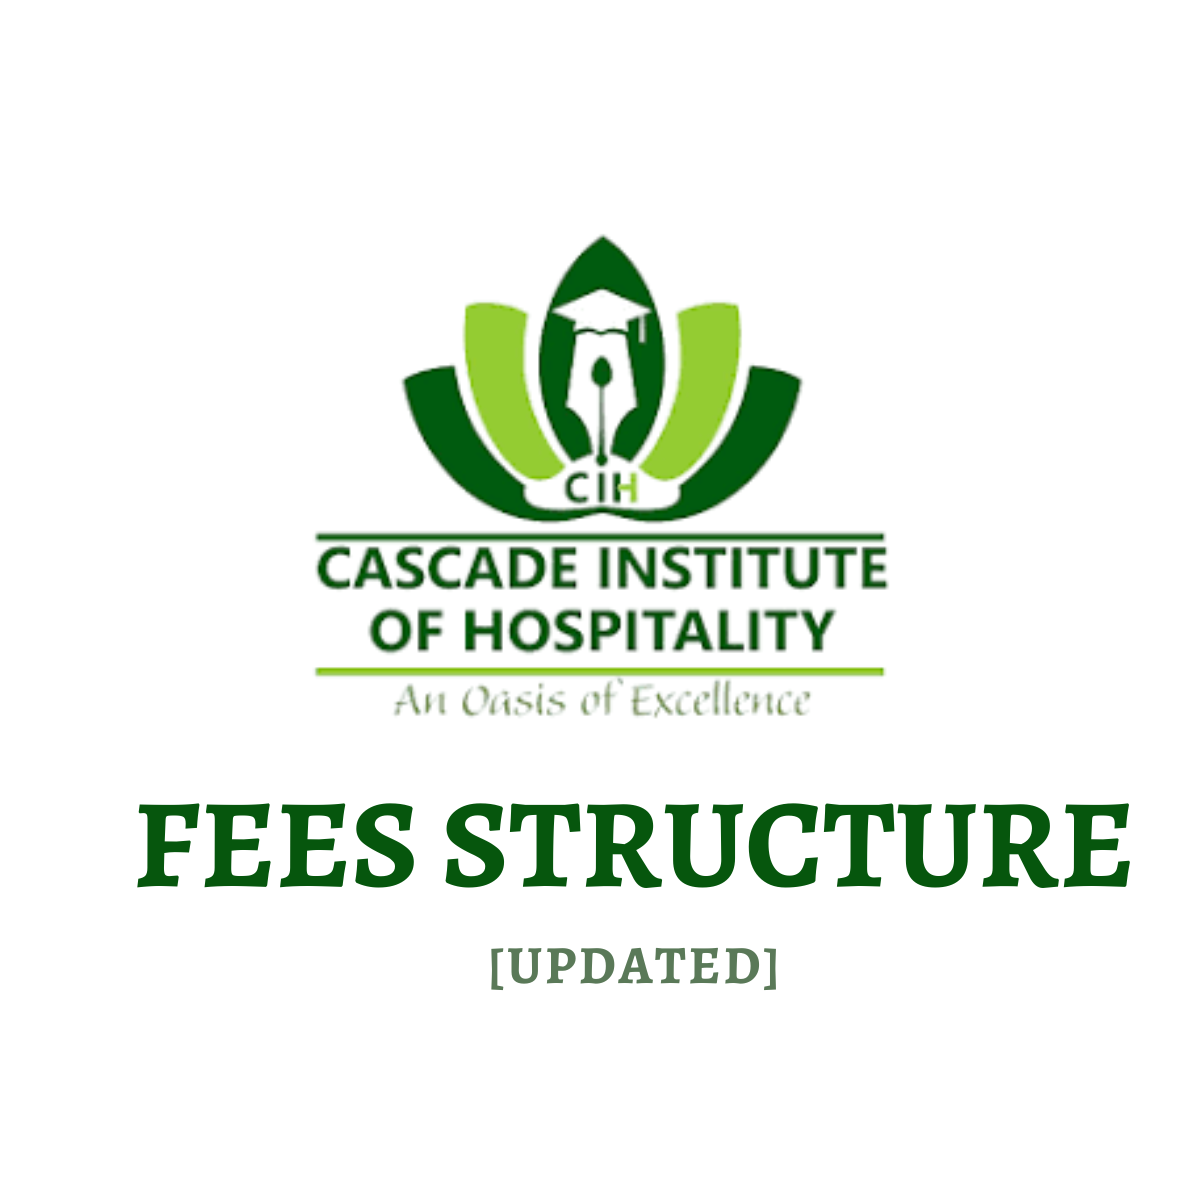 Cascade institute fee structure